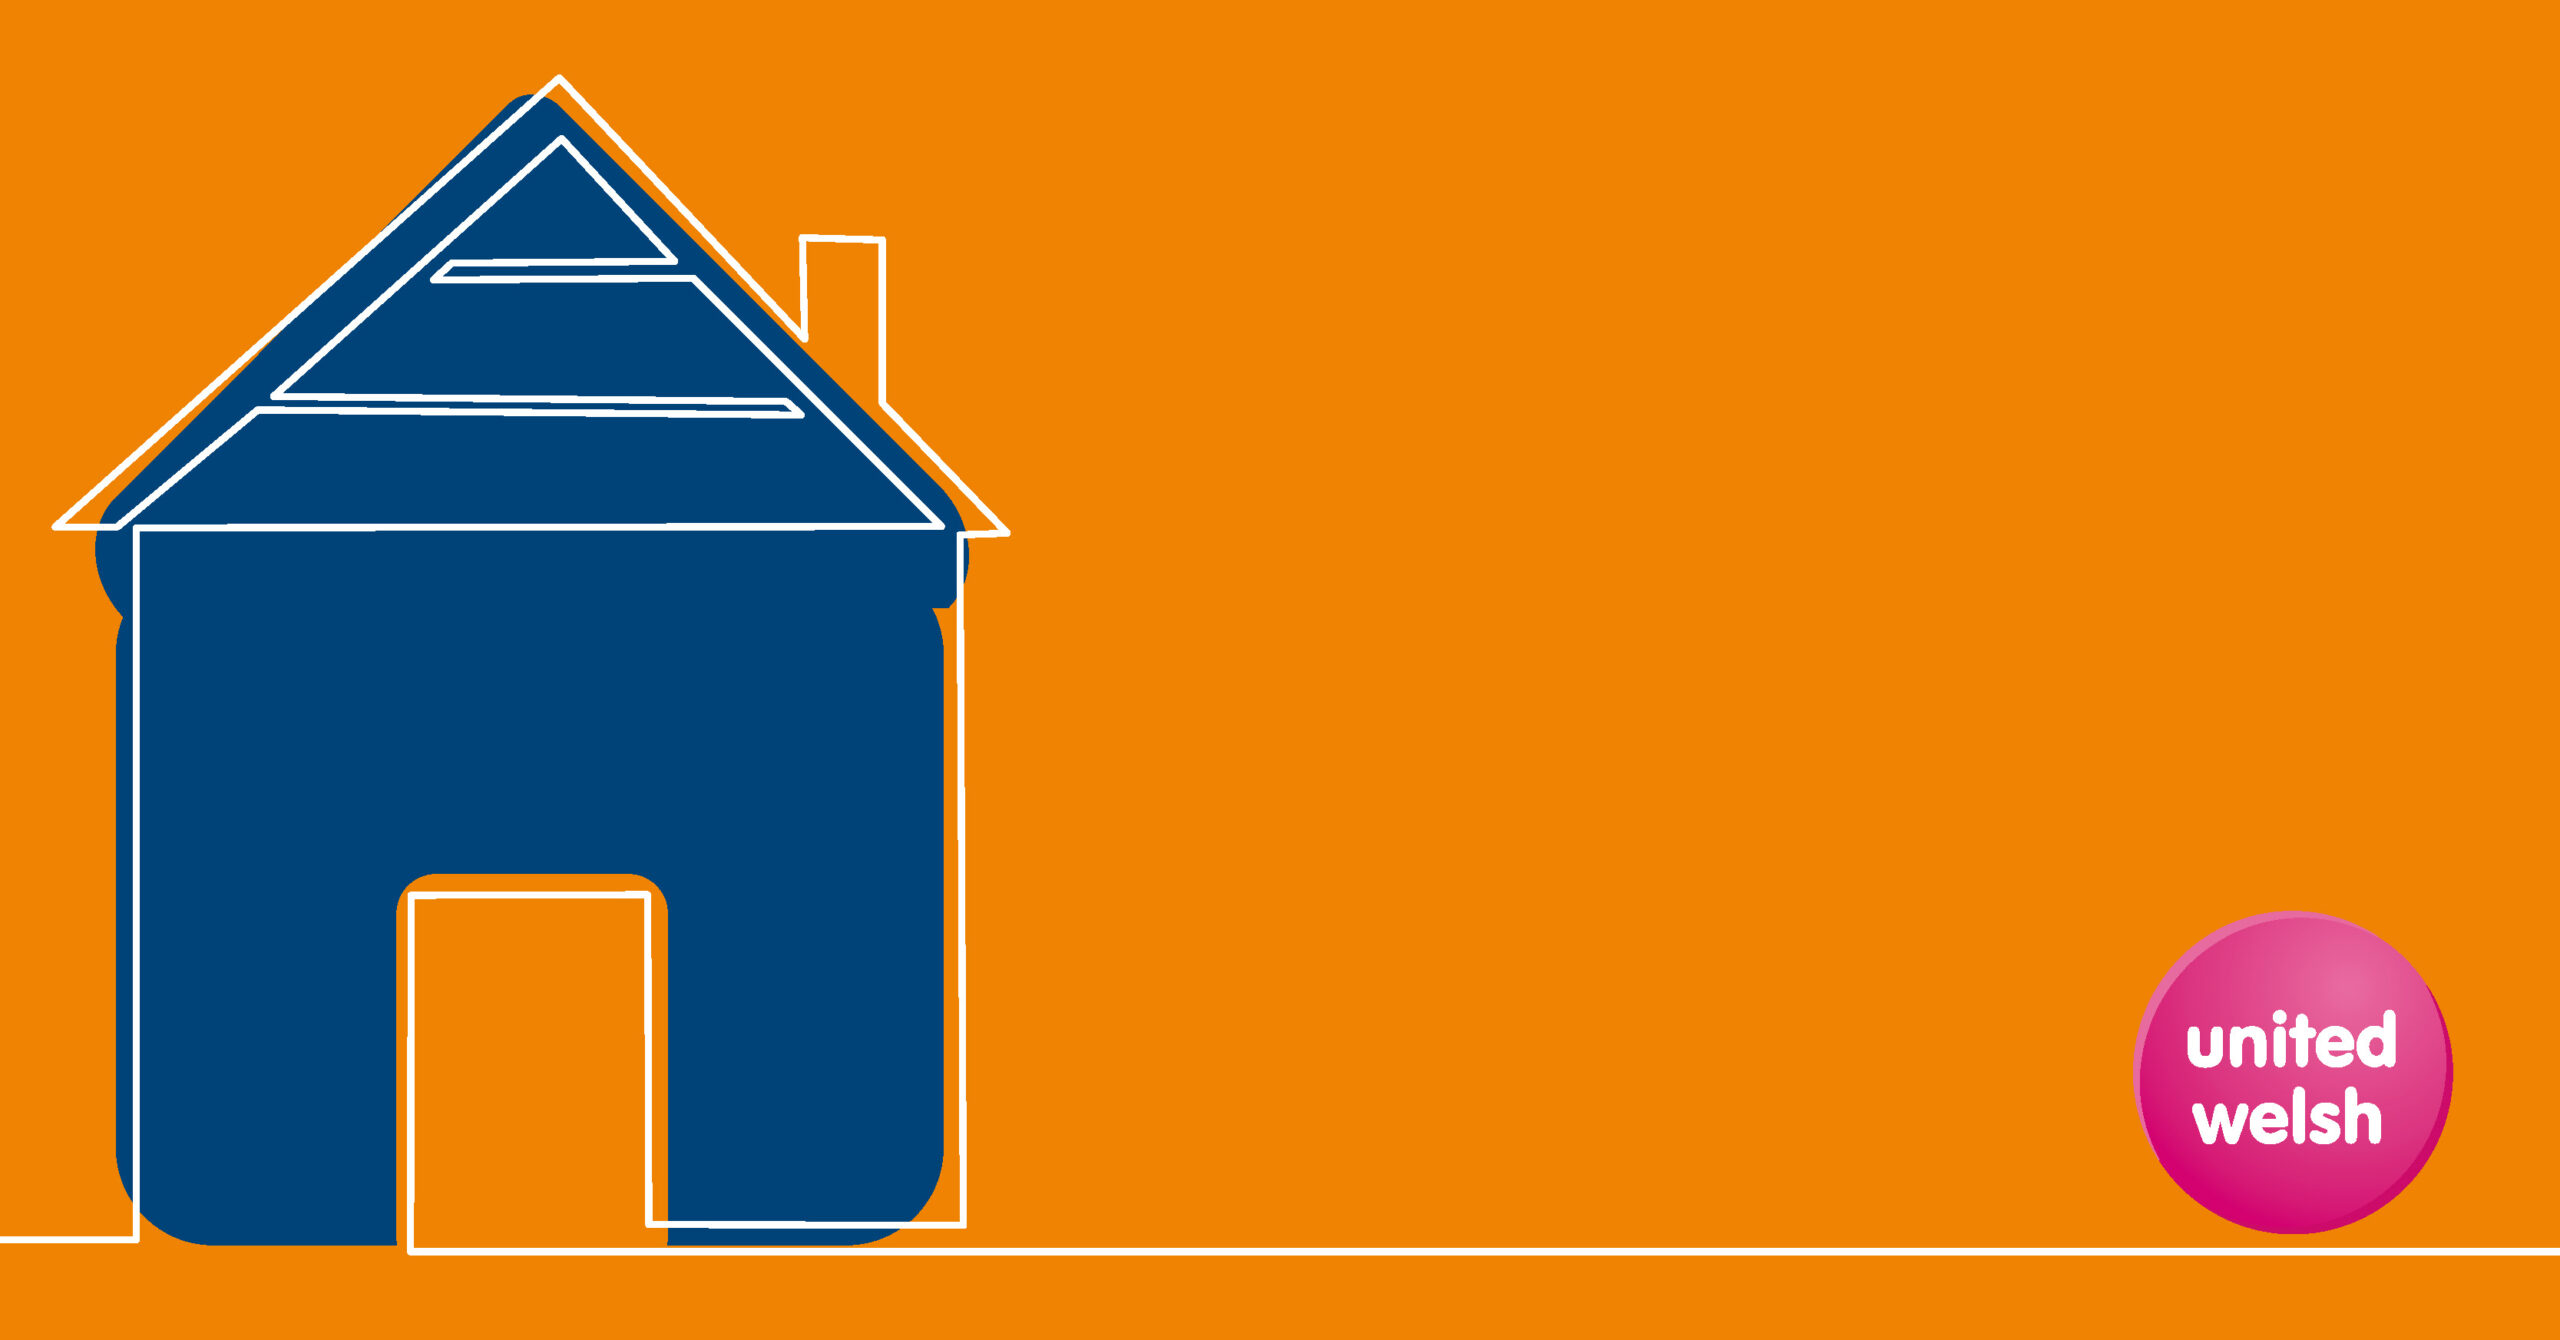 Blue house on orange background with United Welsh logo